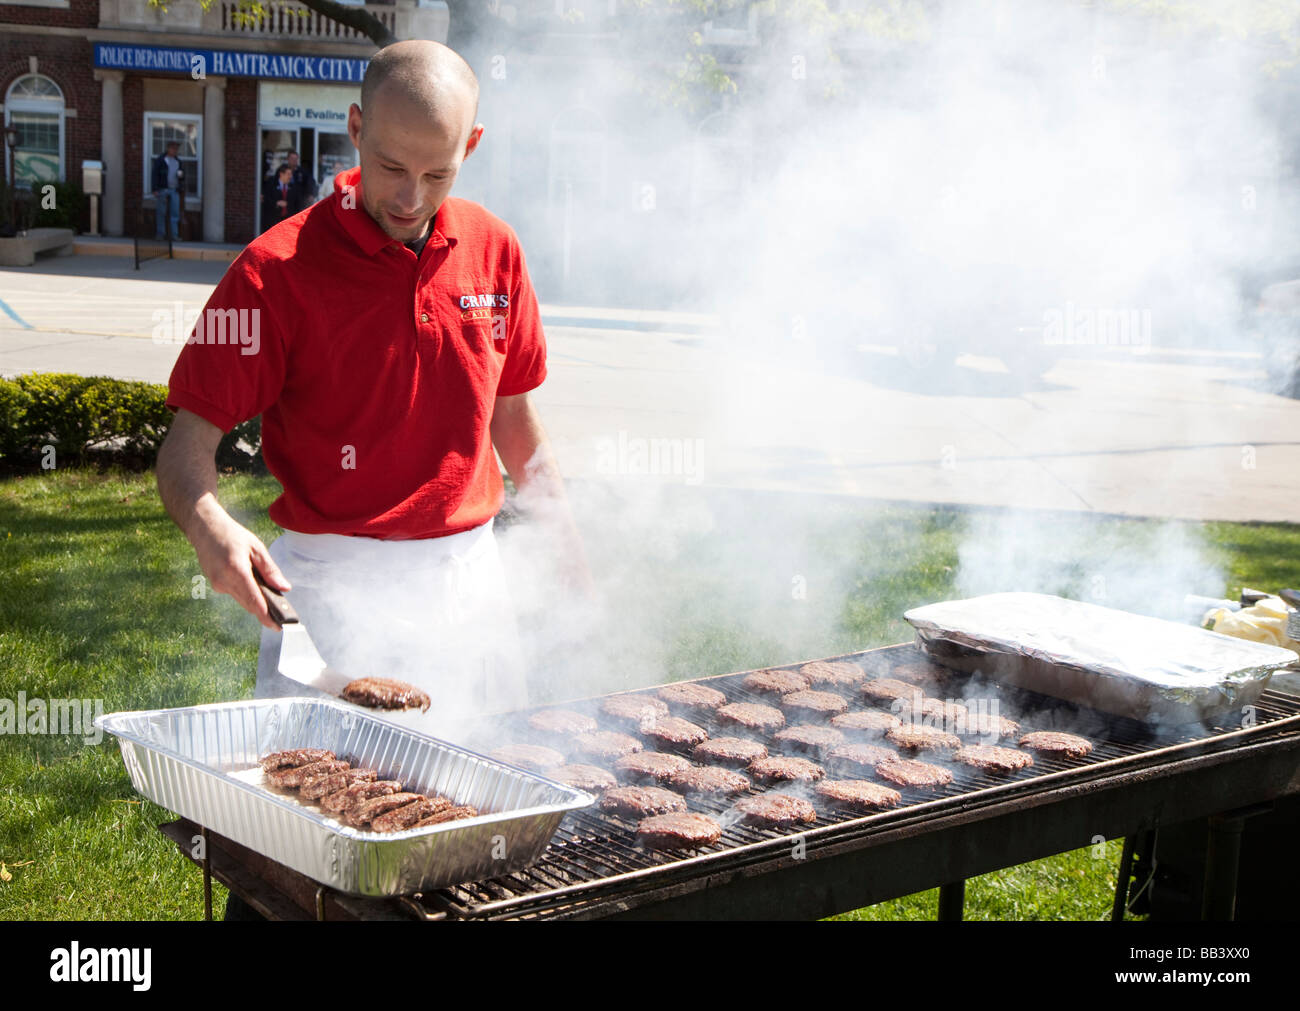 Hamtramck Michigan un traiteur grillades hamburgers pour un rallye du travail à l'hôtel de ville Banque D'Images